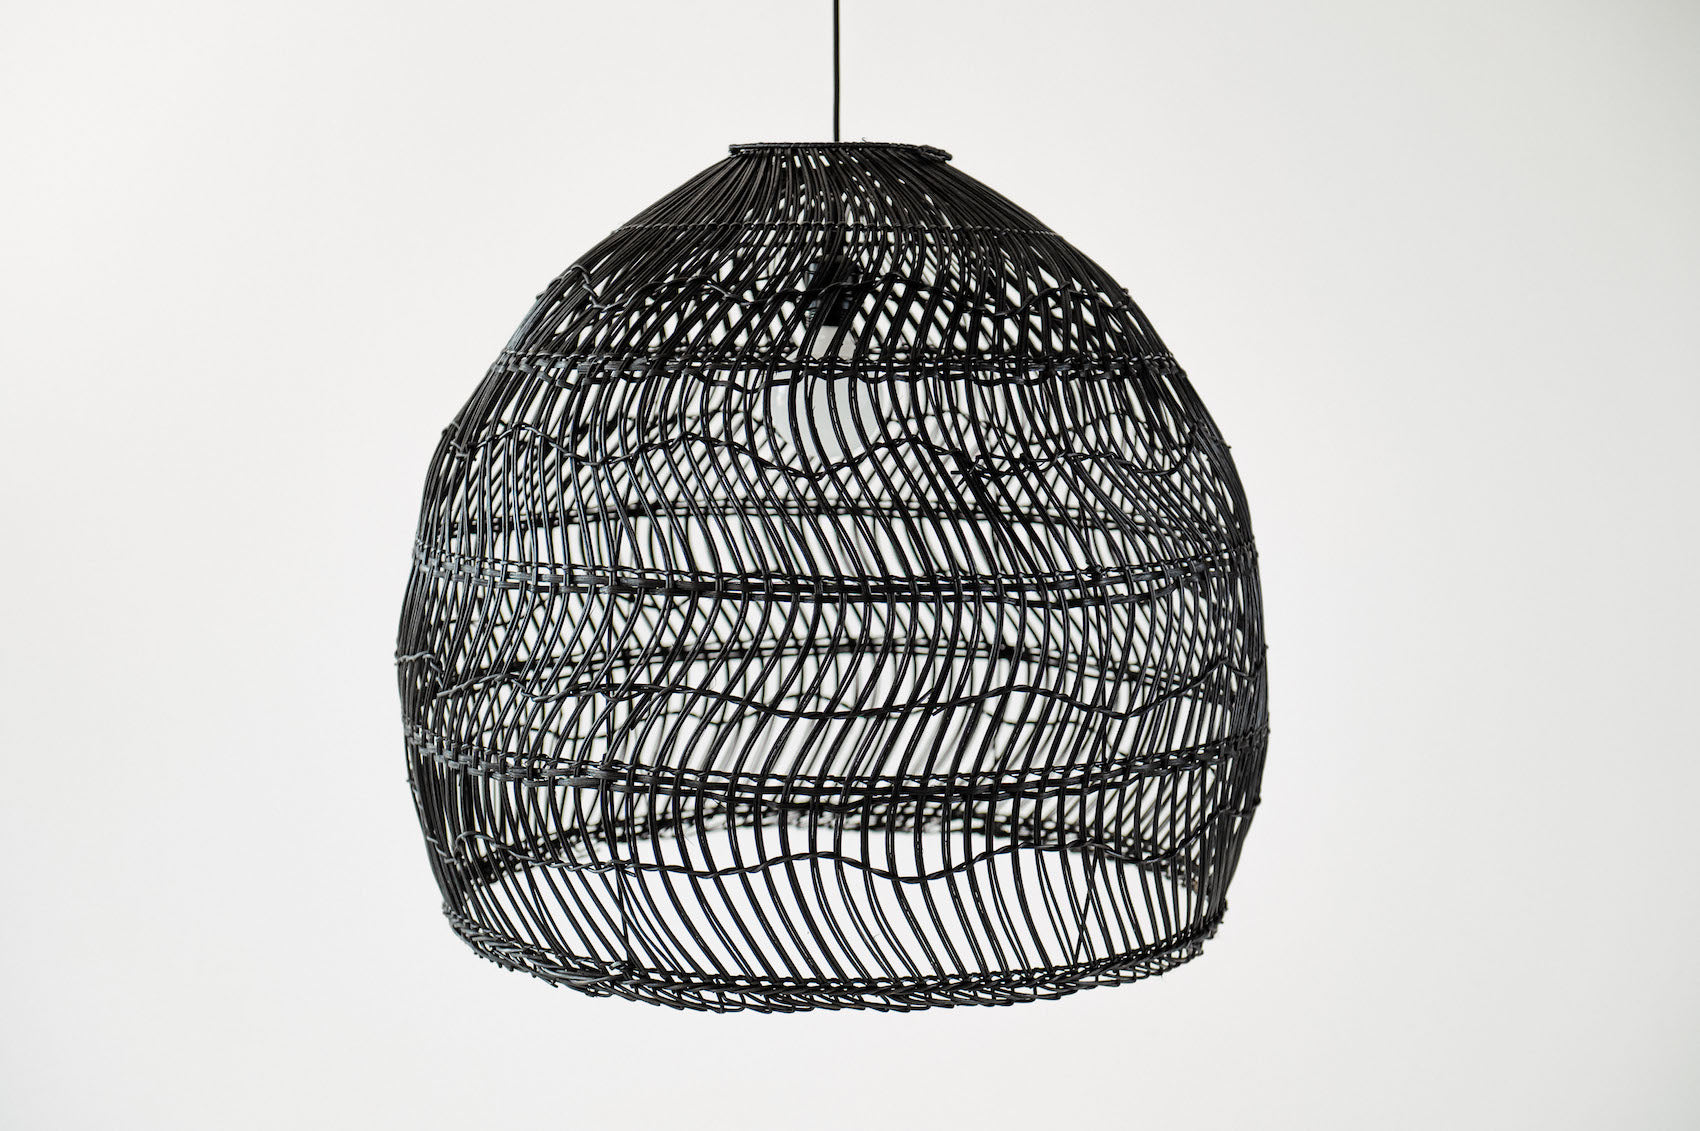 Black Rattan Lamp - Rattan Furniture - Boho Style Lamp - Monnarita - handmade lamp